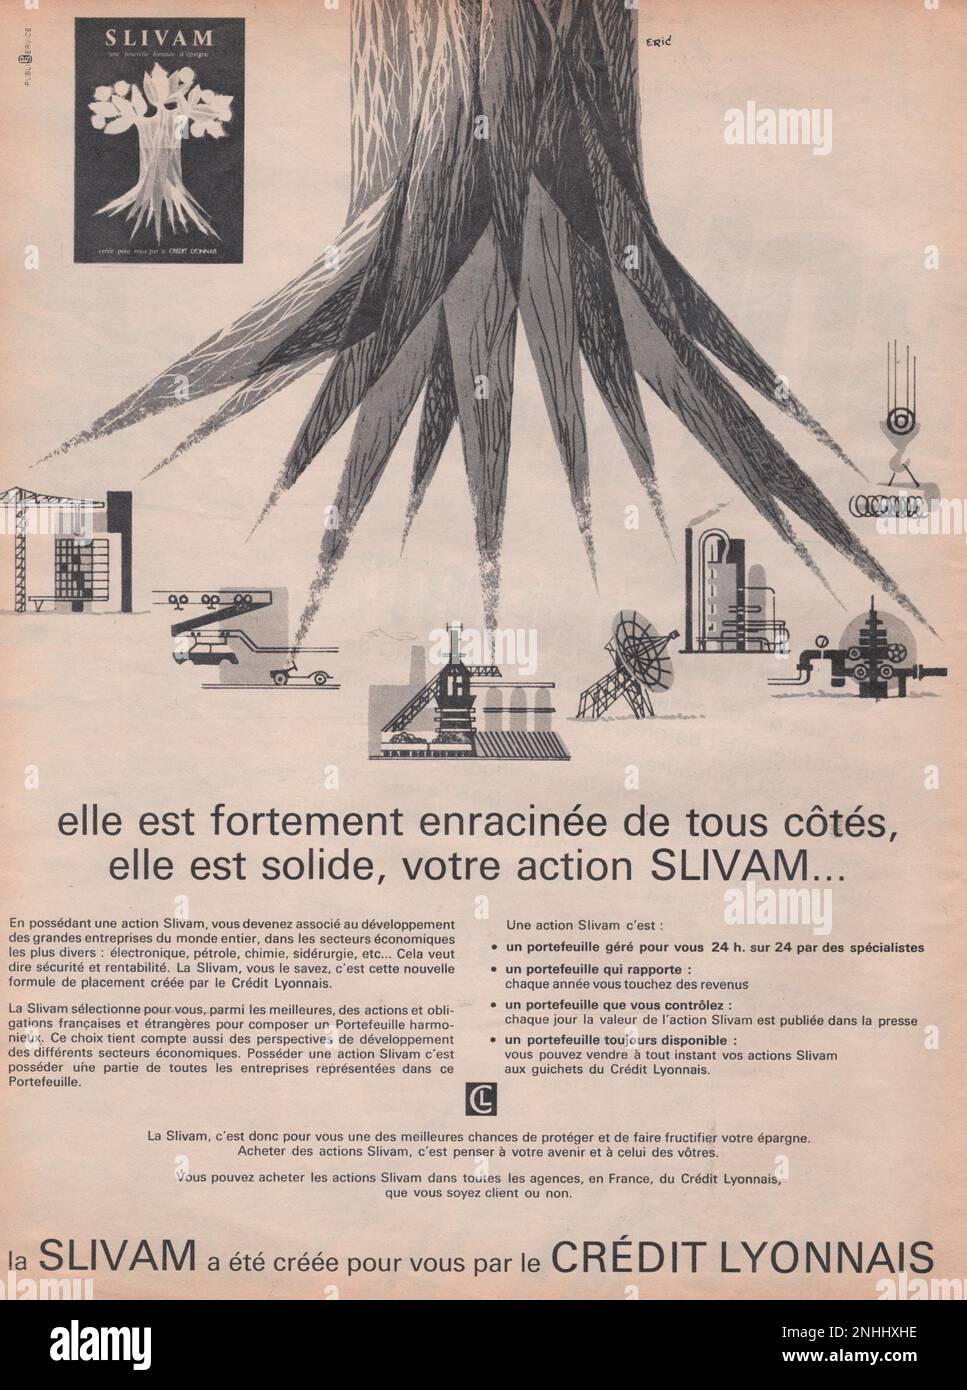 credit lyonnais vintage advertisement Stock Photo